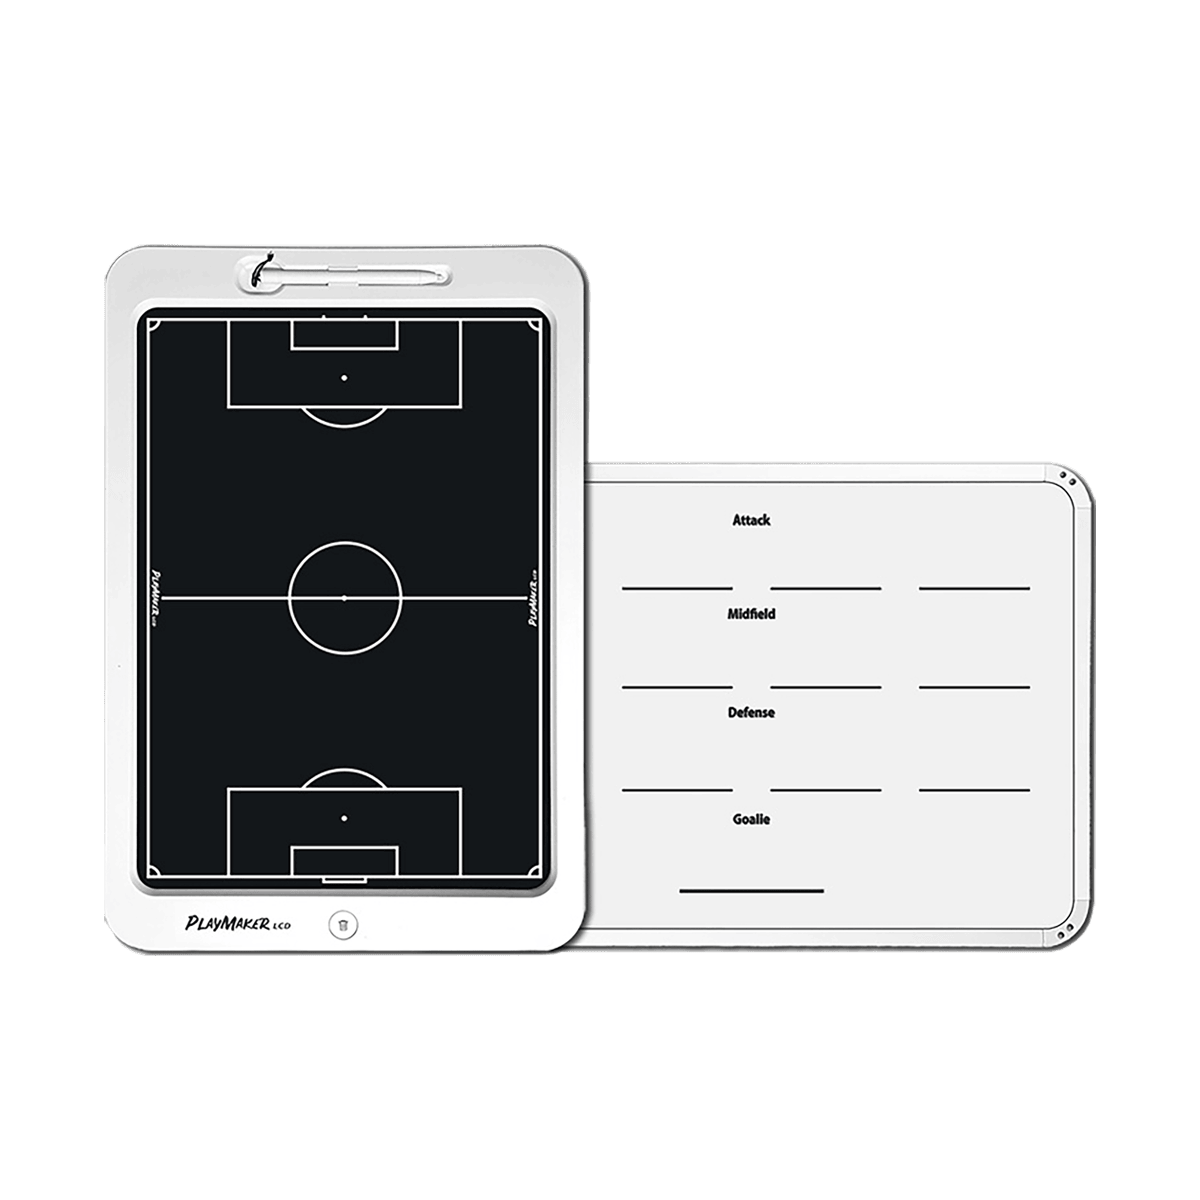 TABLETTE DE COACHING LCD 20 POUCES - FOOTBALL